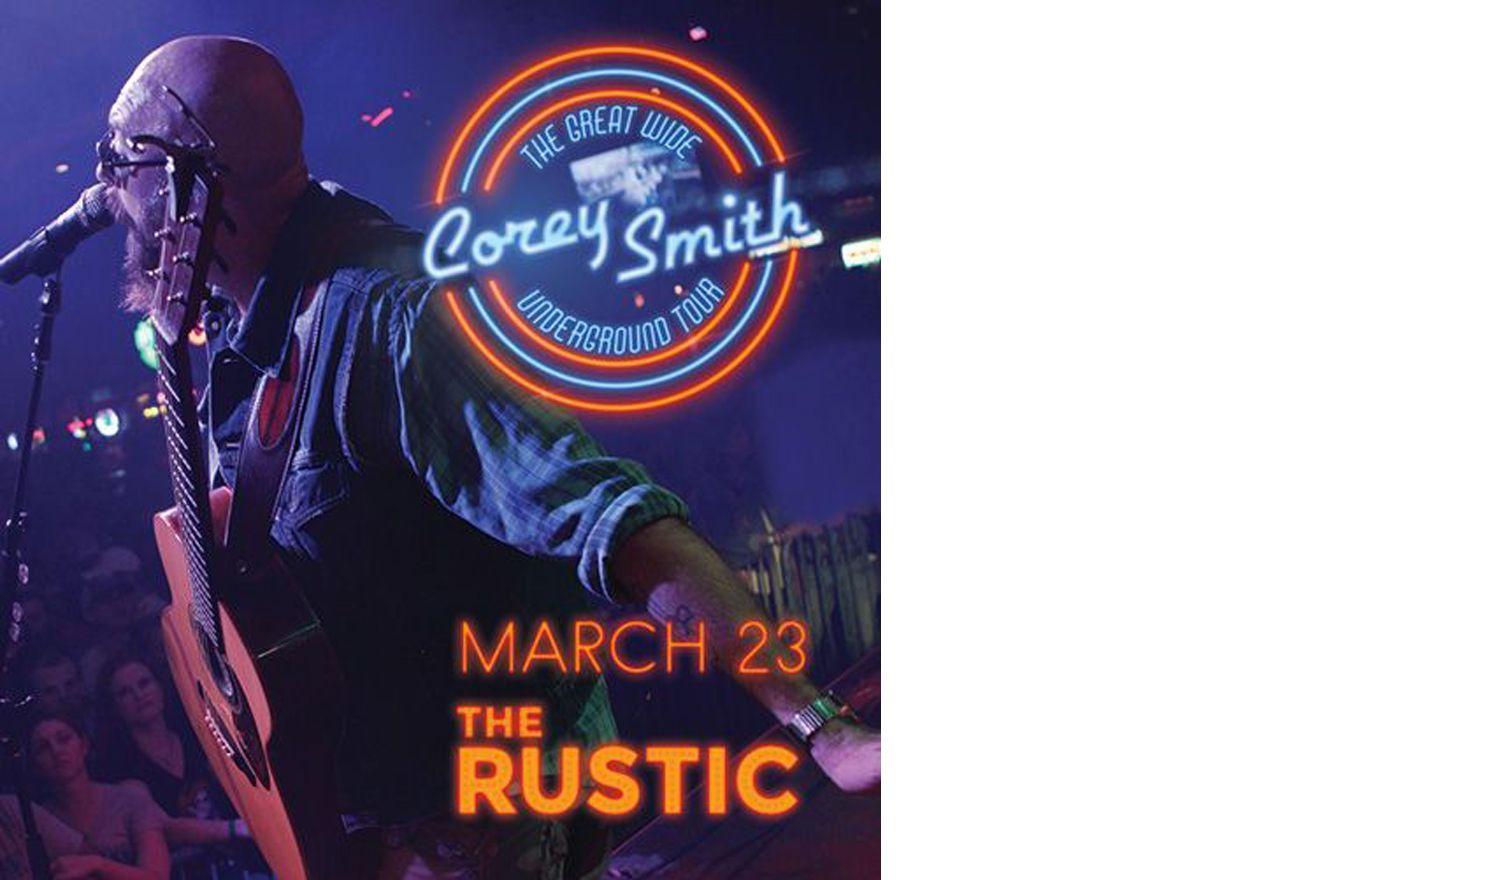 The Rustic Dallas Logo - The Rustic: Corey Smith - Uptown Dallas Inc.